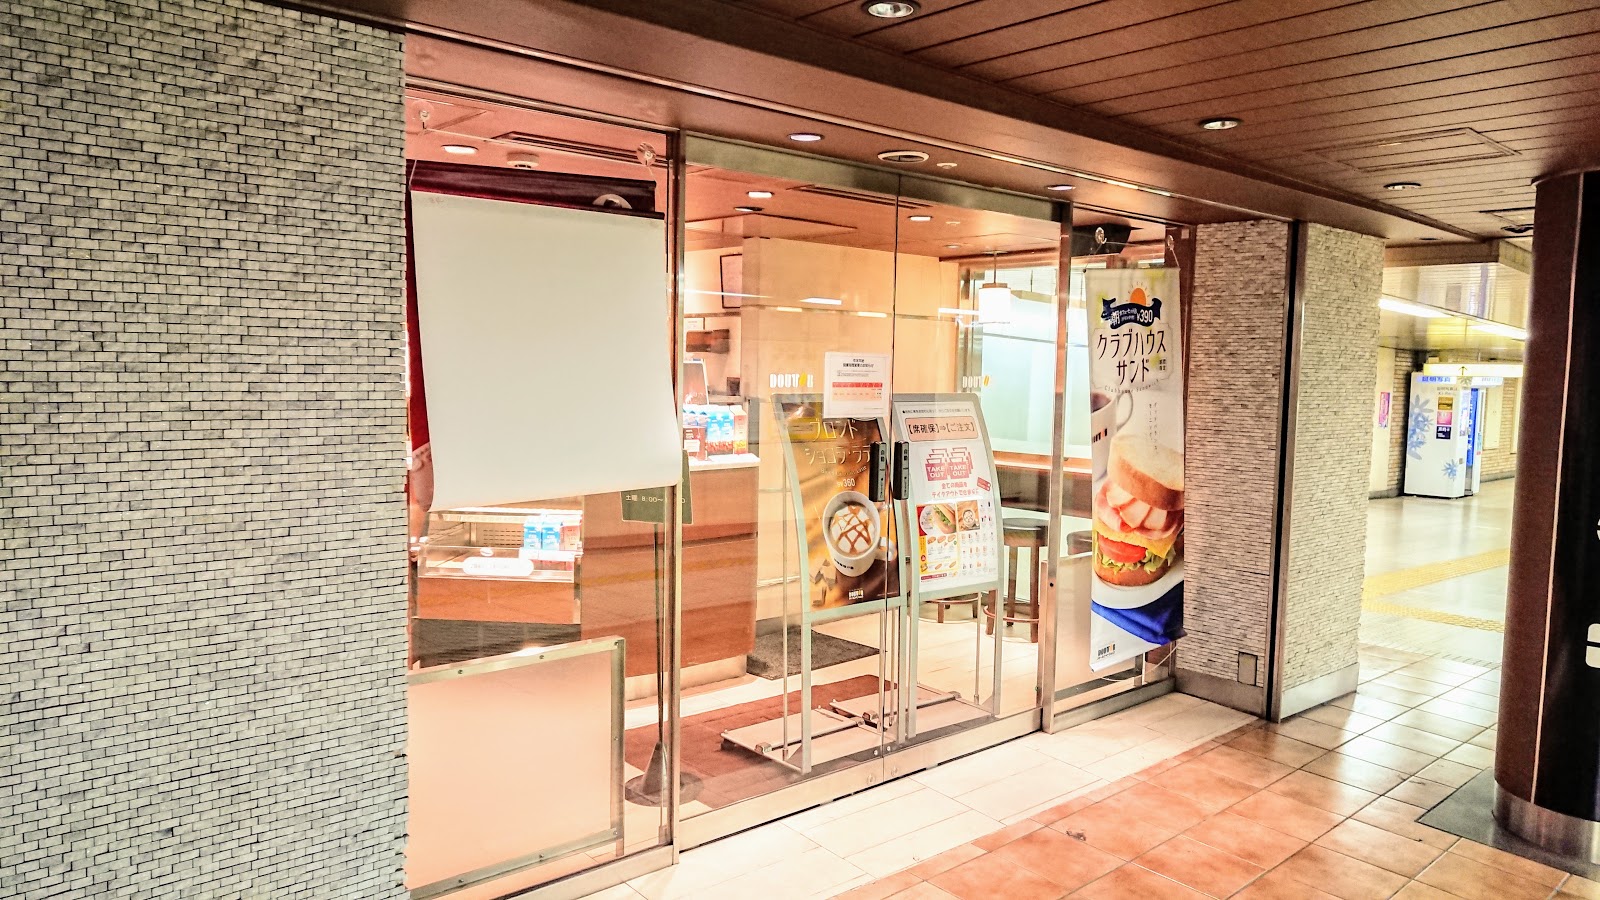 ドトールコーヒーショップ 霞ケ関メトロピア店の風景